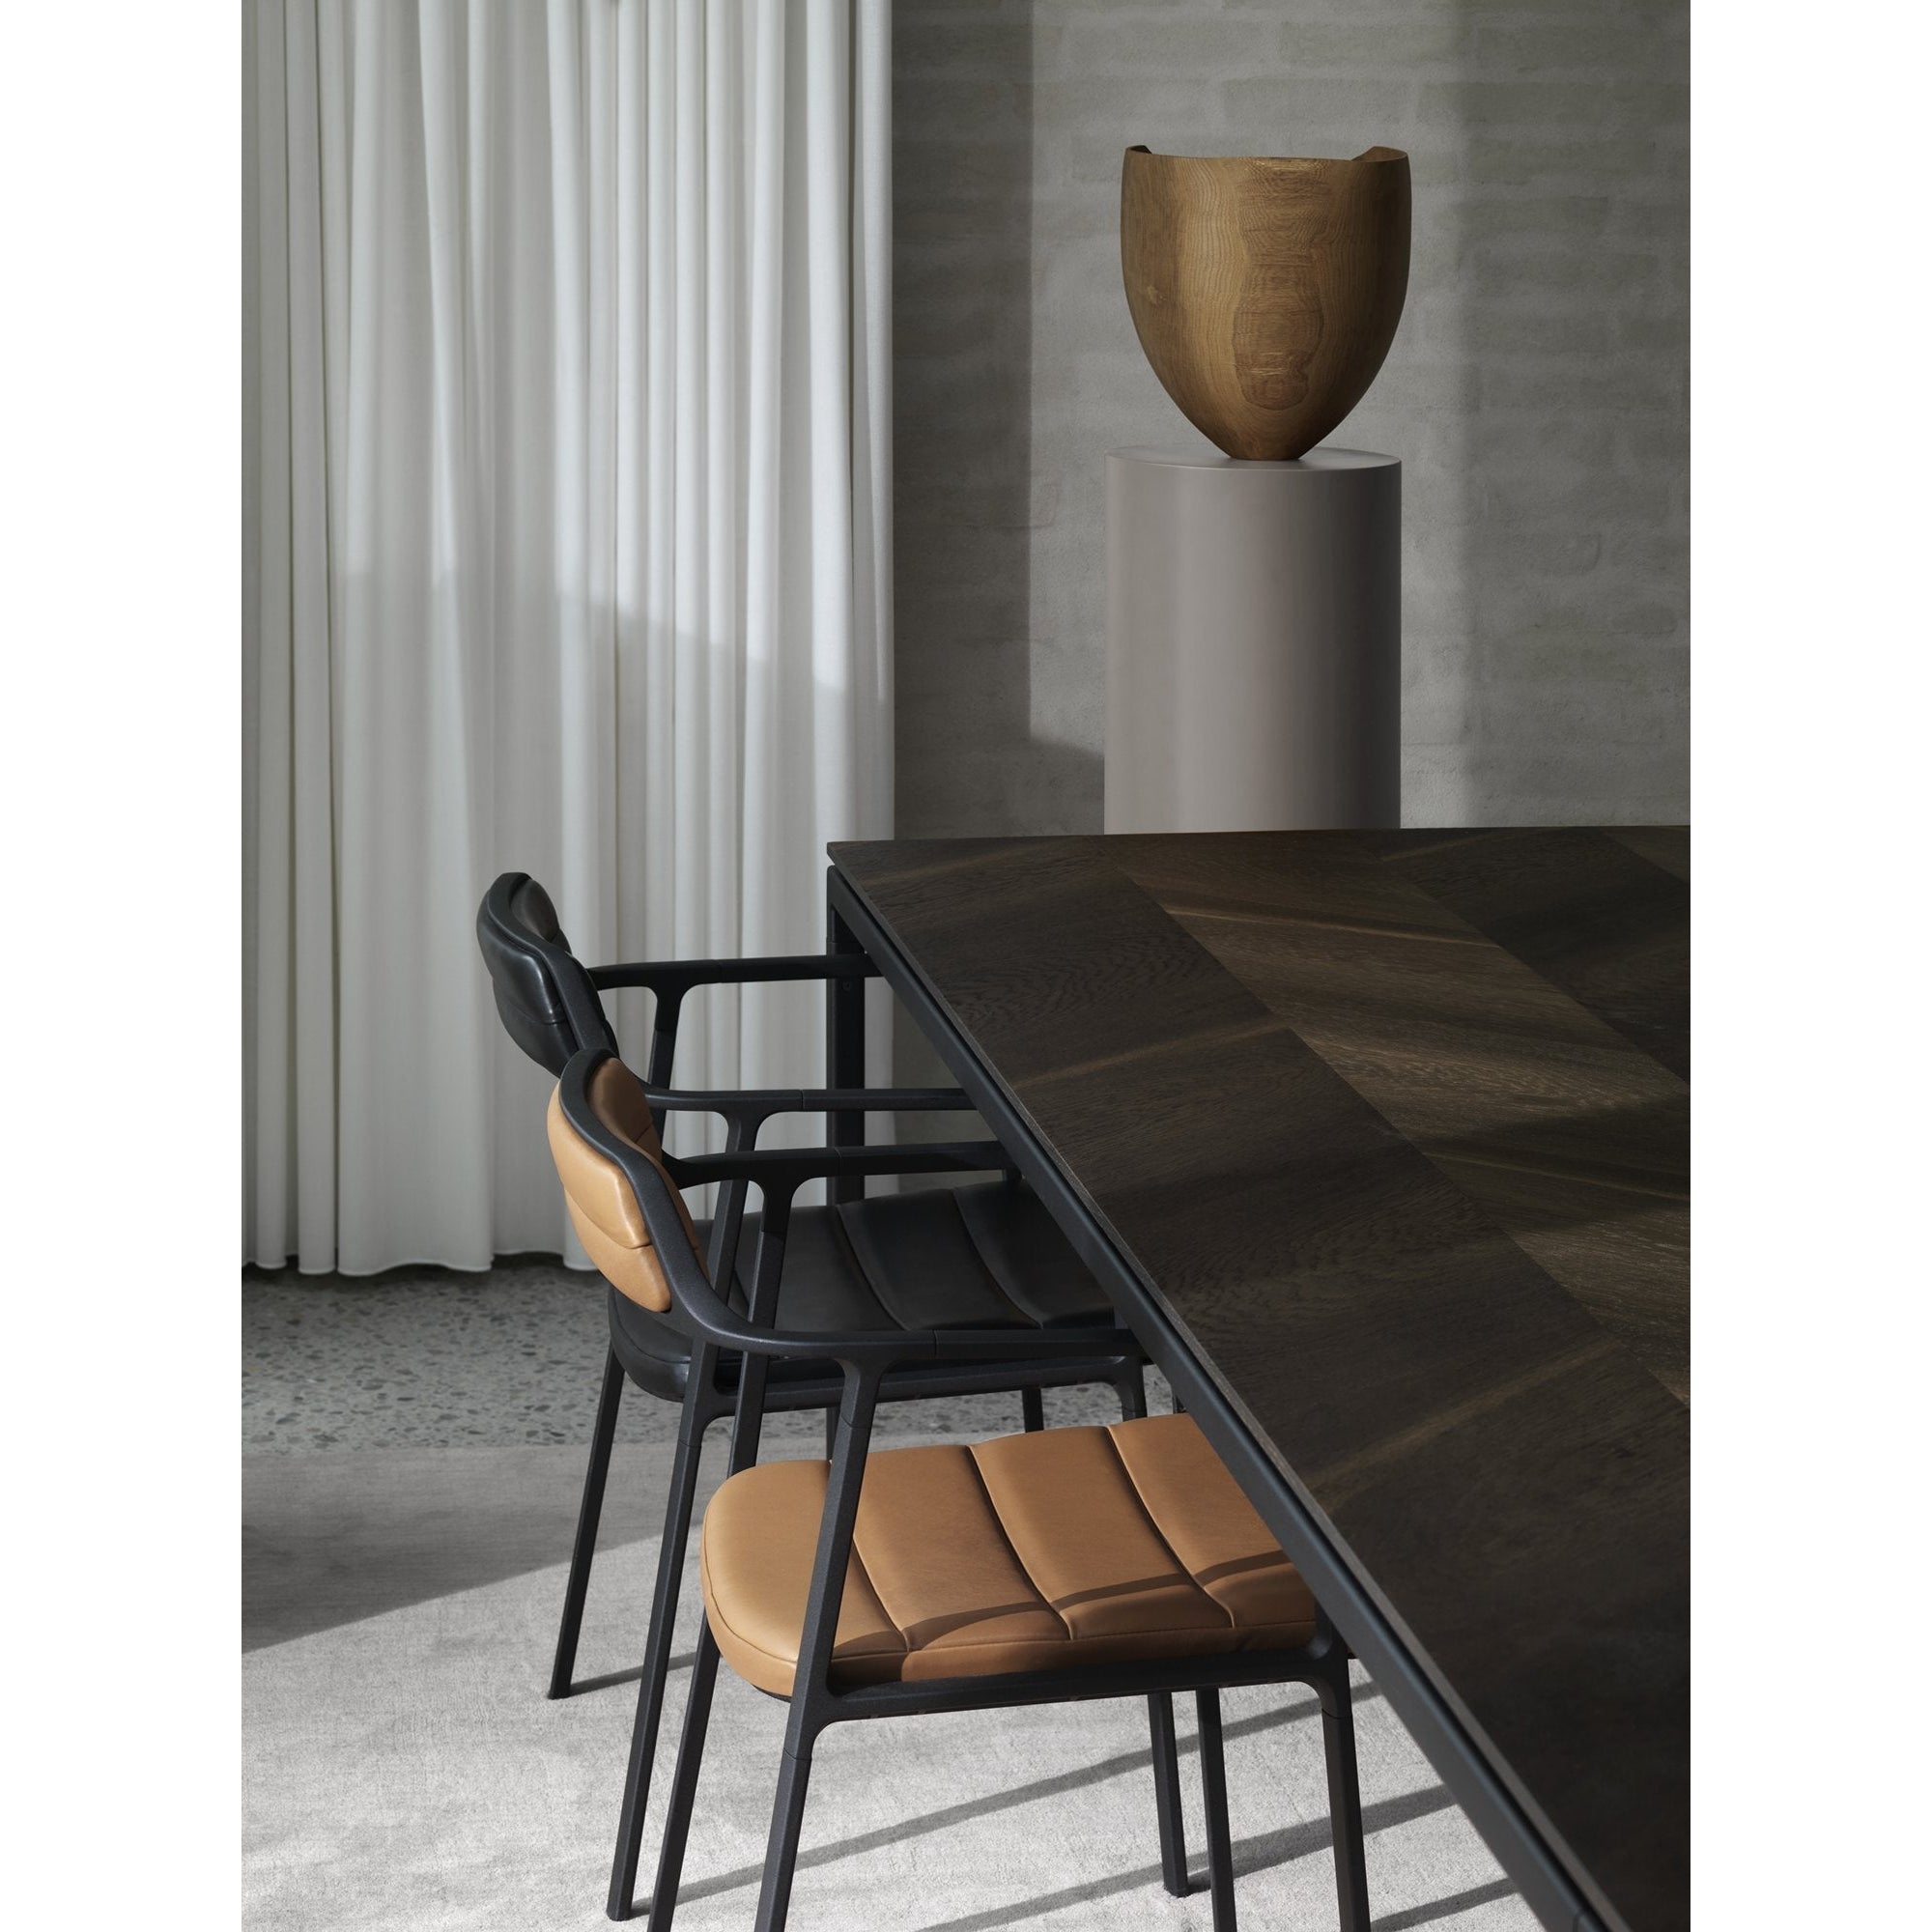 Vipp 451 chaise m / cuir, noir